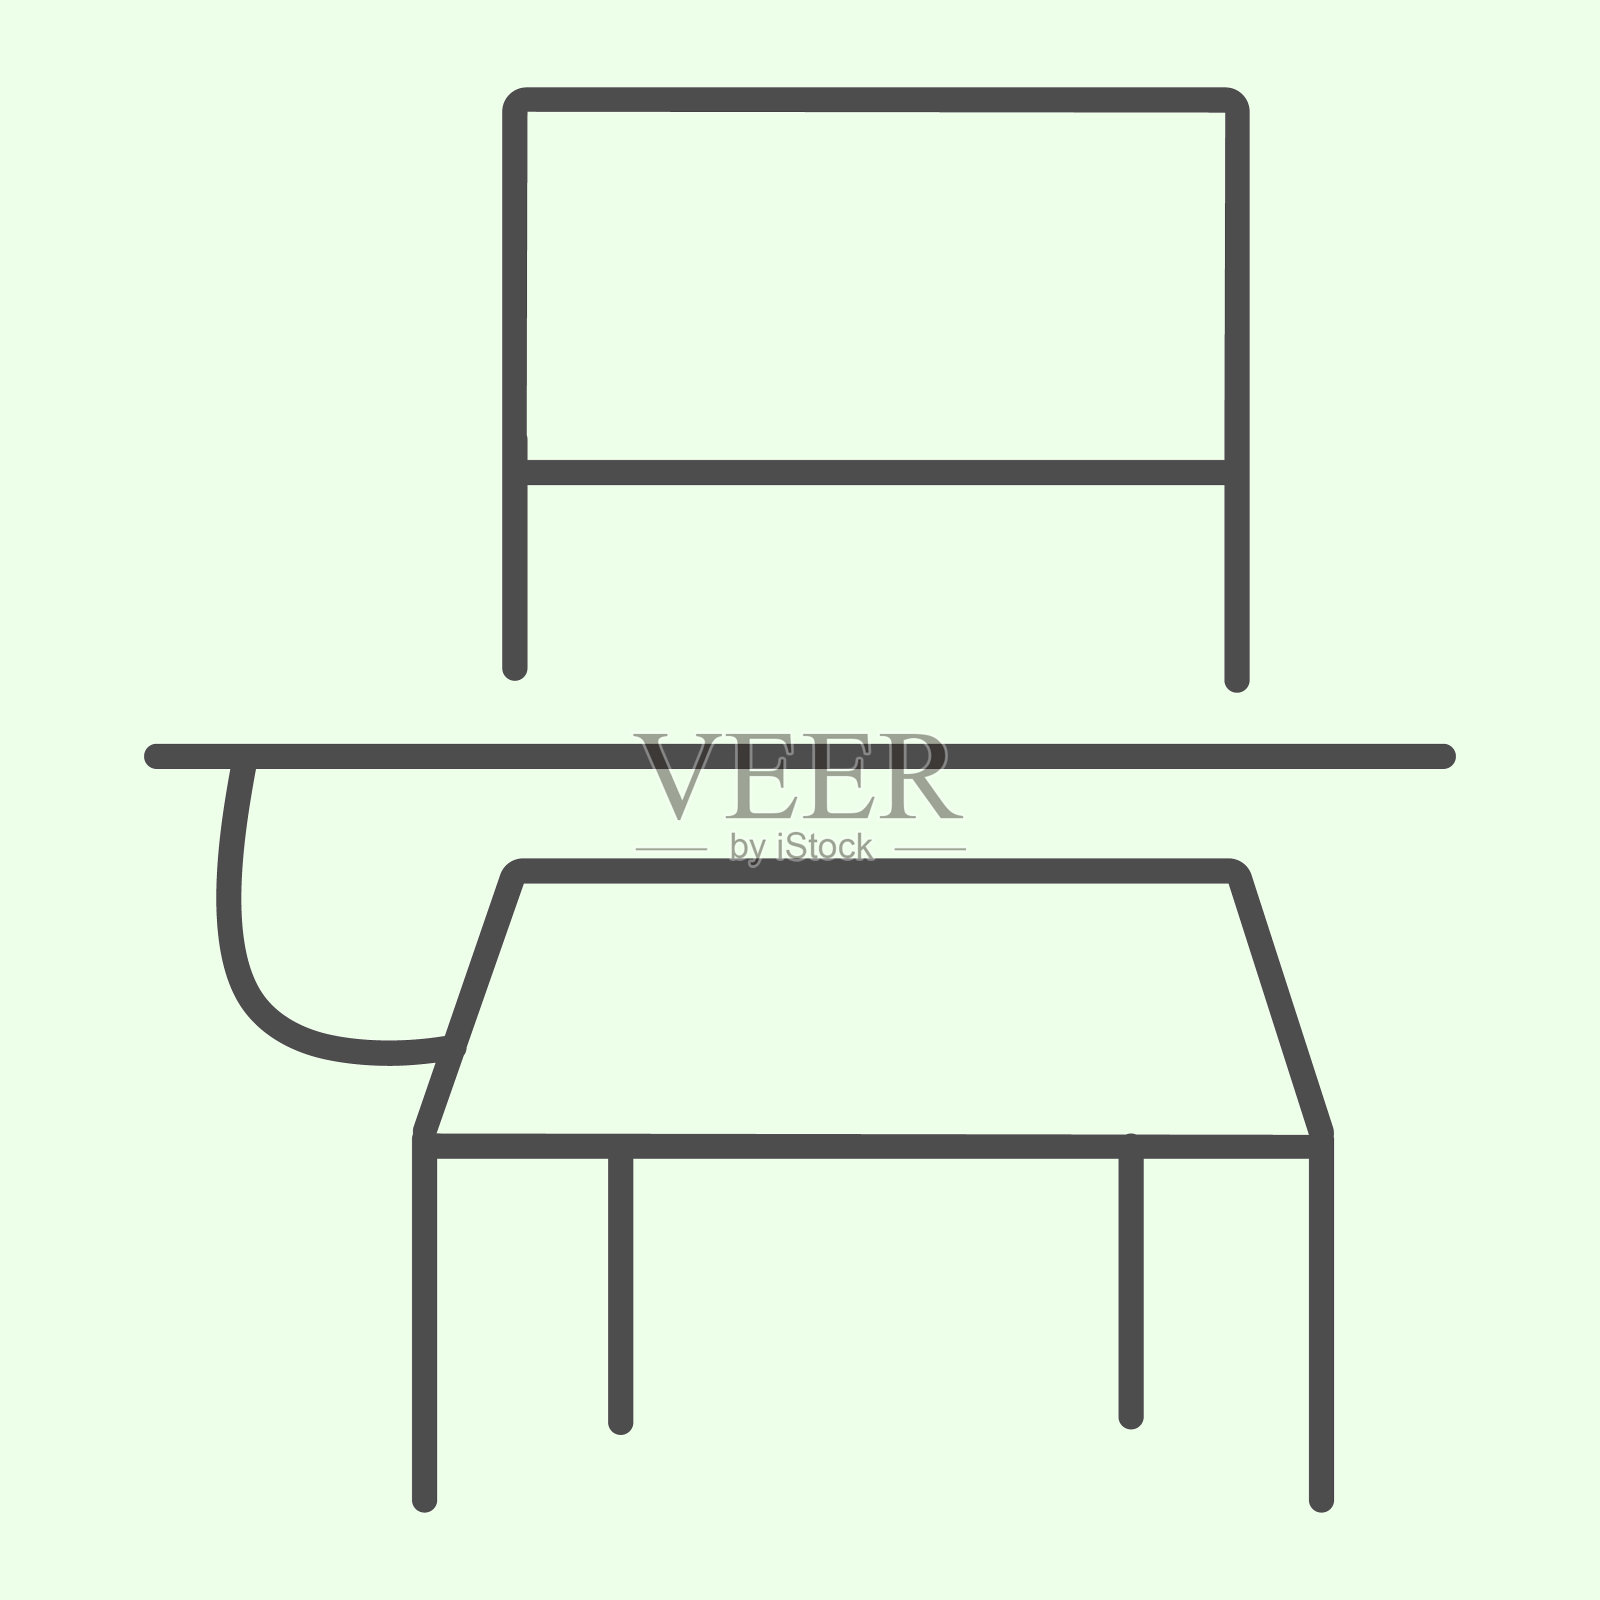 学校课桌细线图标。教室学生桌子和椅子轮廓风格象形在白色的背景。教育和学习移动概念和网页设计的标志。矢量图形。插画图片素材